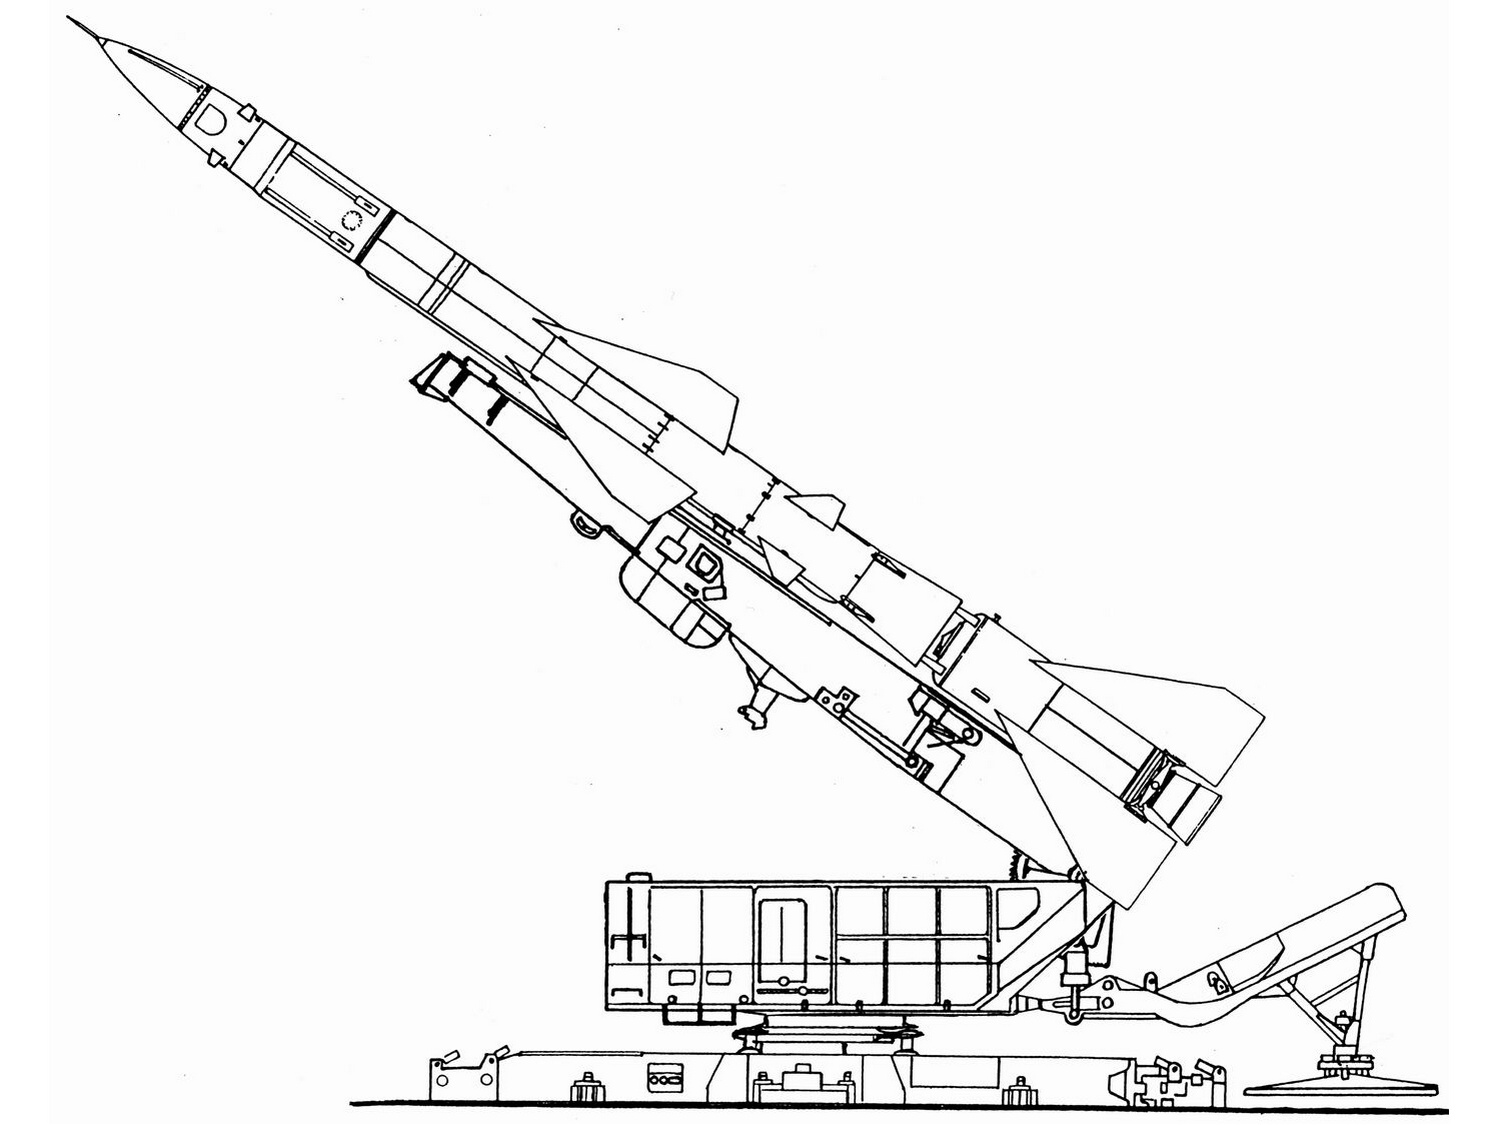 薩姆-2防空飛彈側視線圖